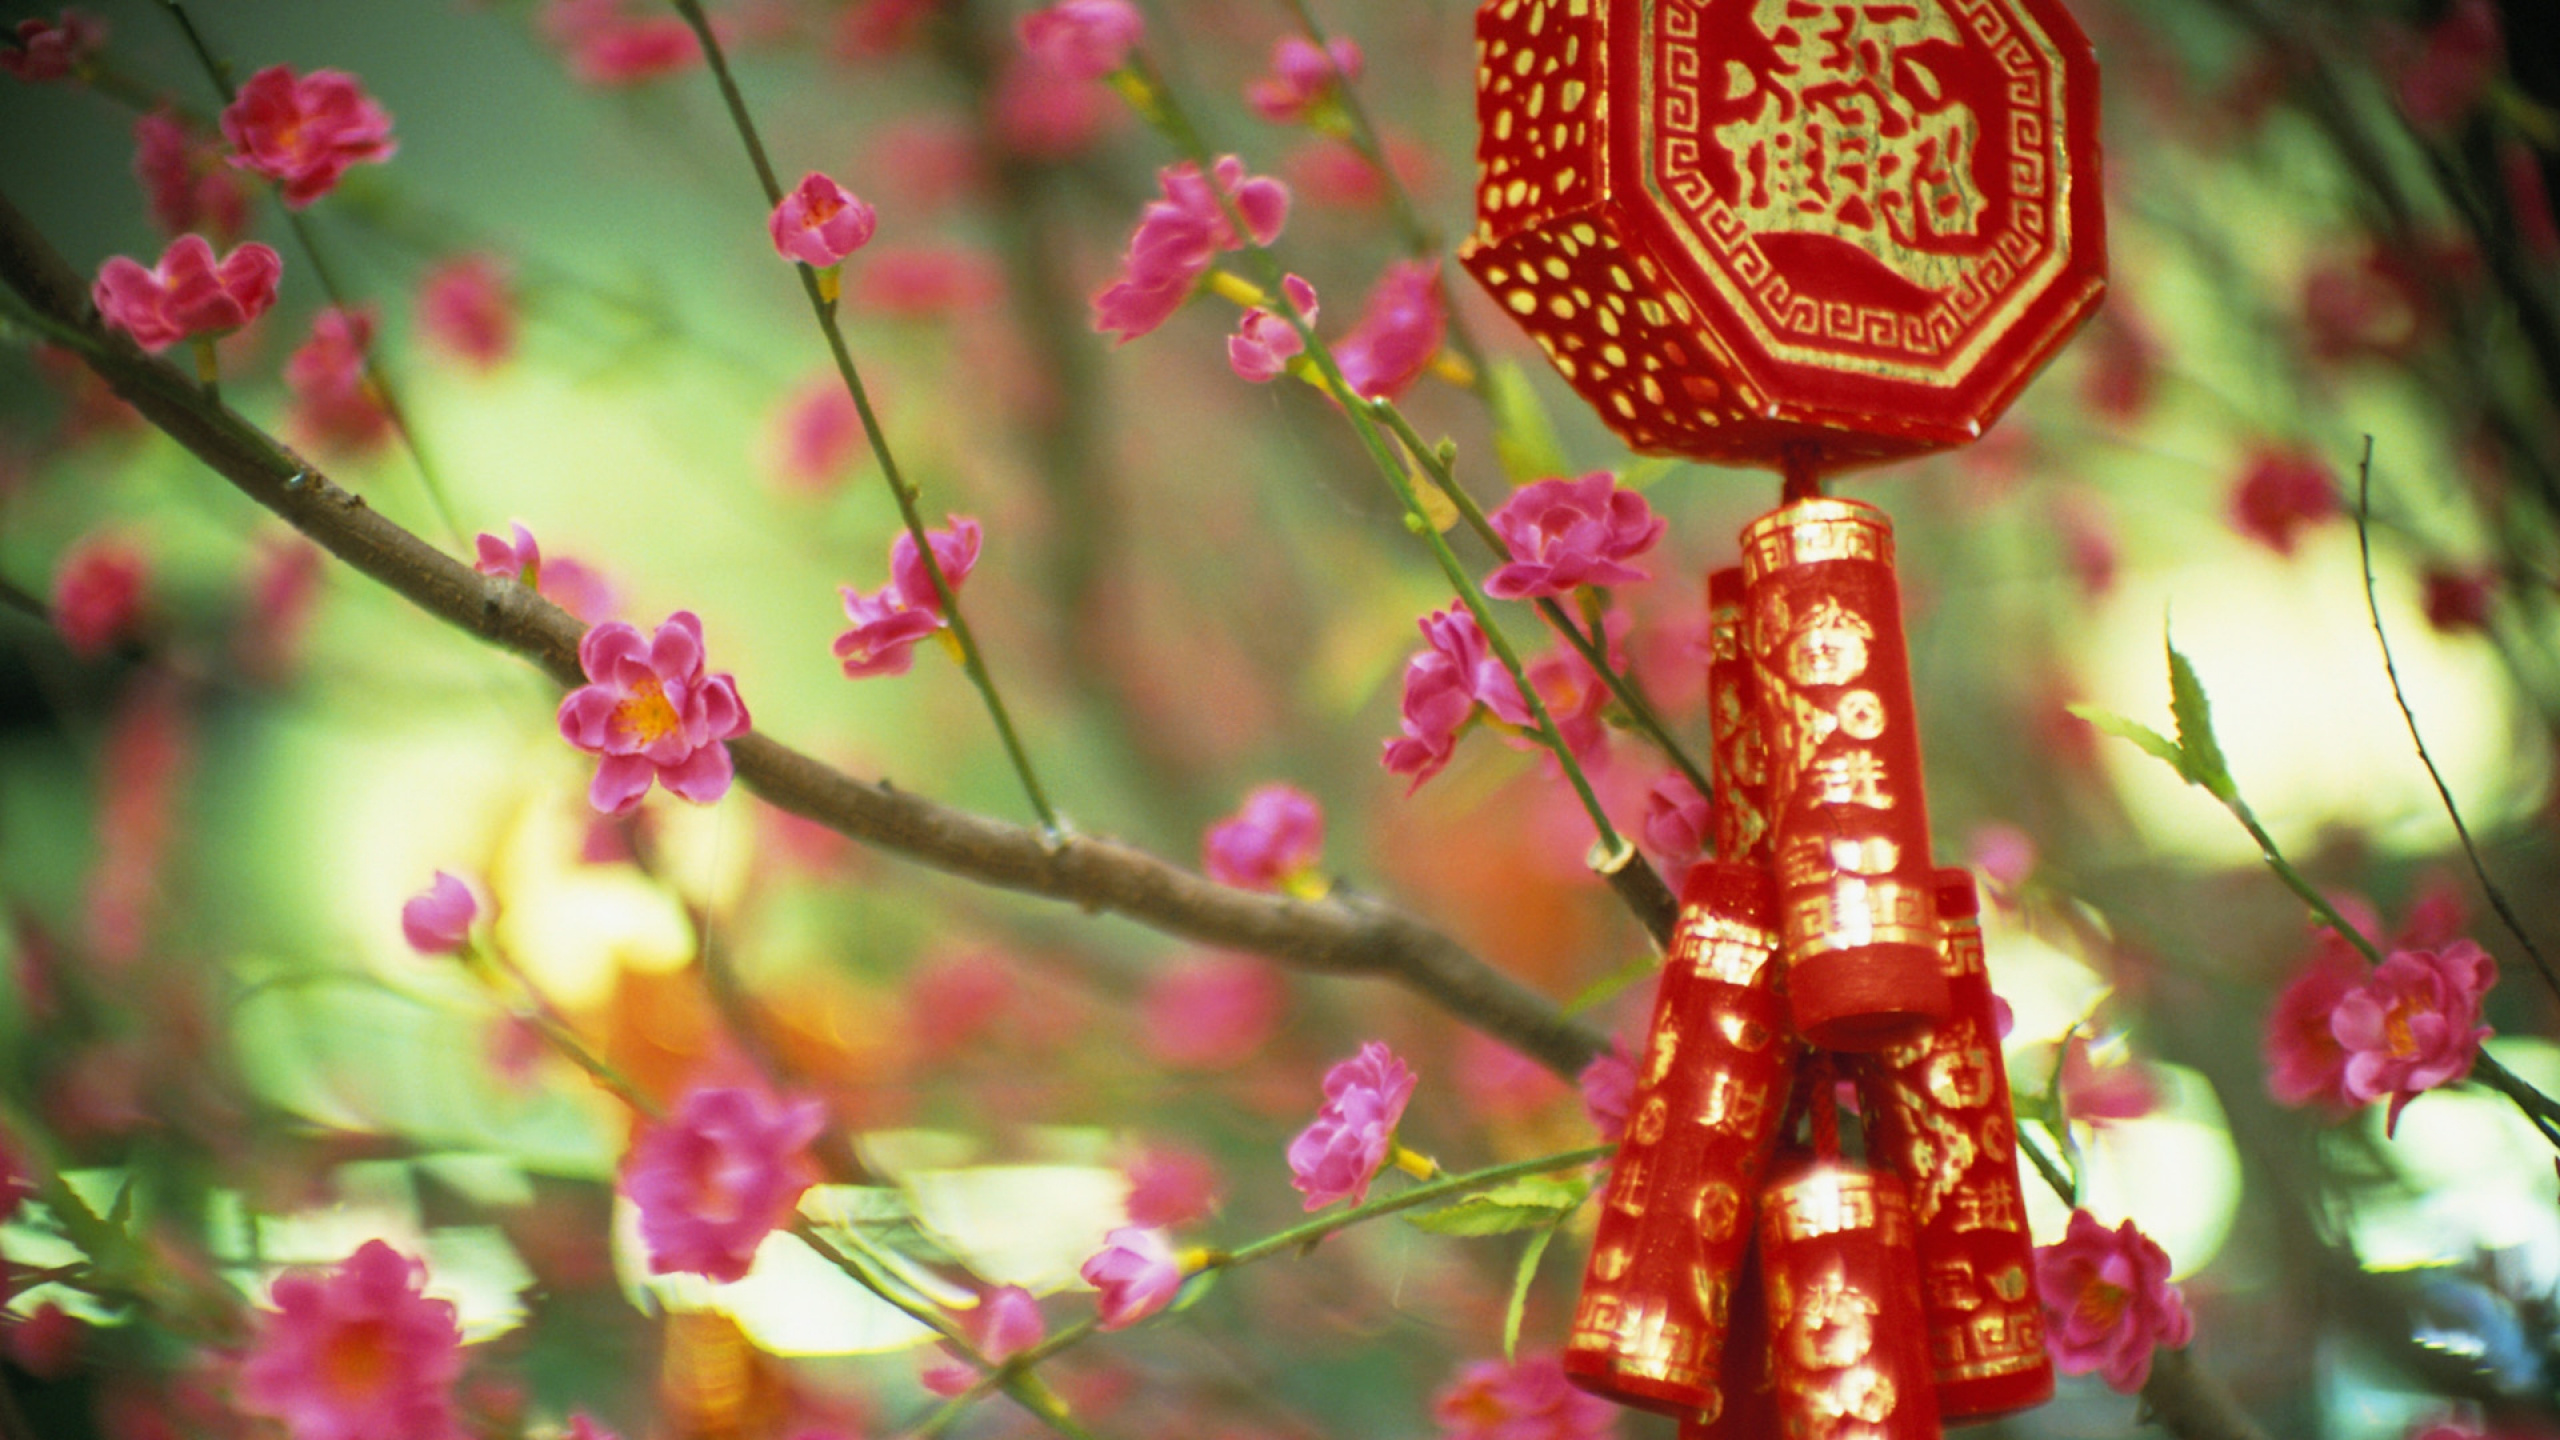 中国, 粉红色, 弹簧, 开花, 中国农历新年 壁纸 2560x1440 允许